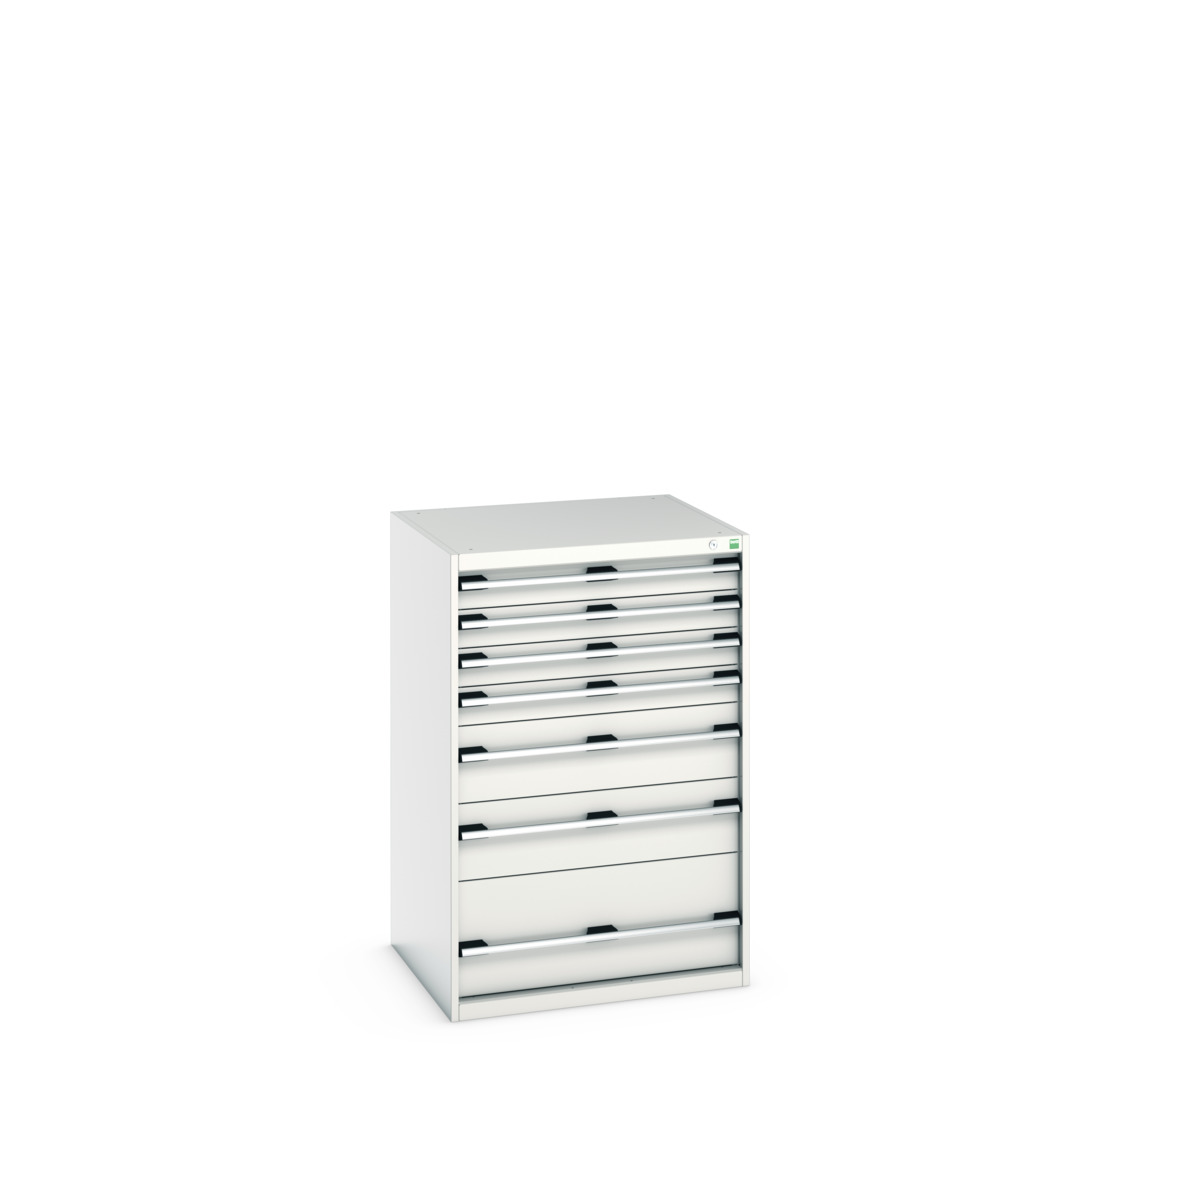 40028032.16V - cubio drawer cabinet